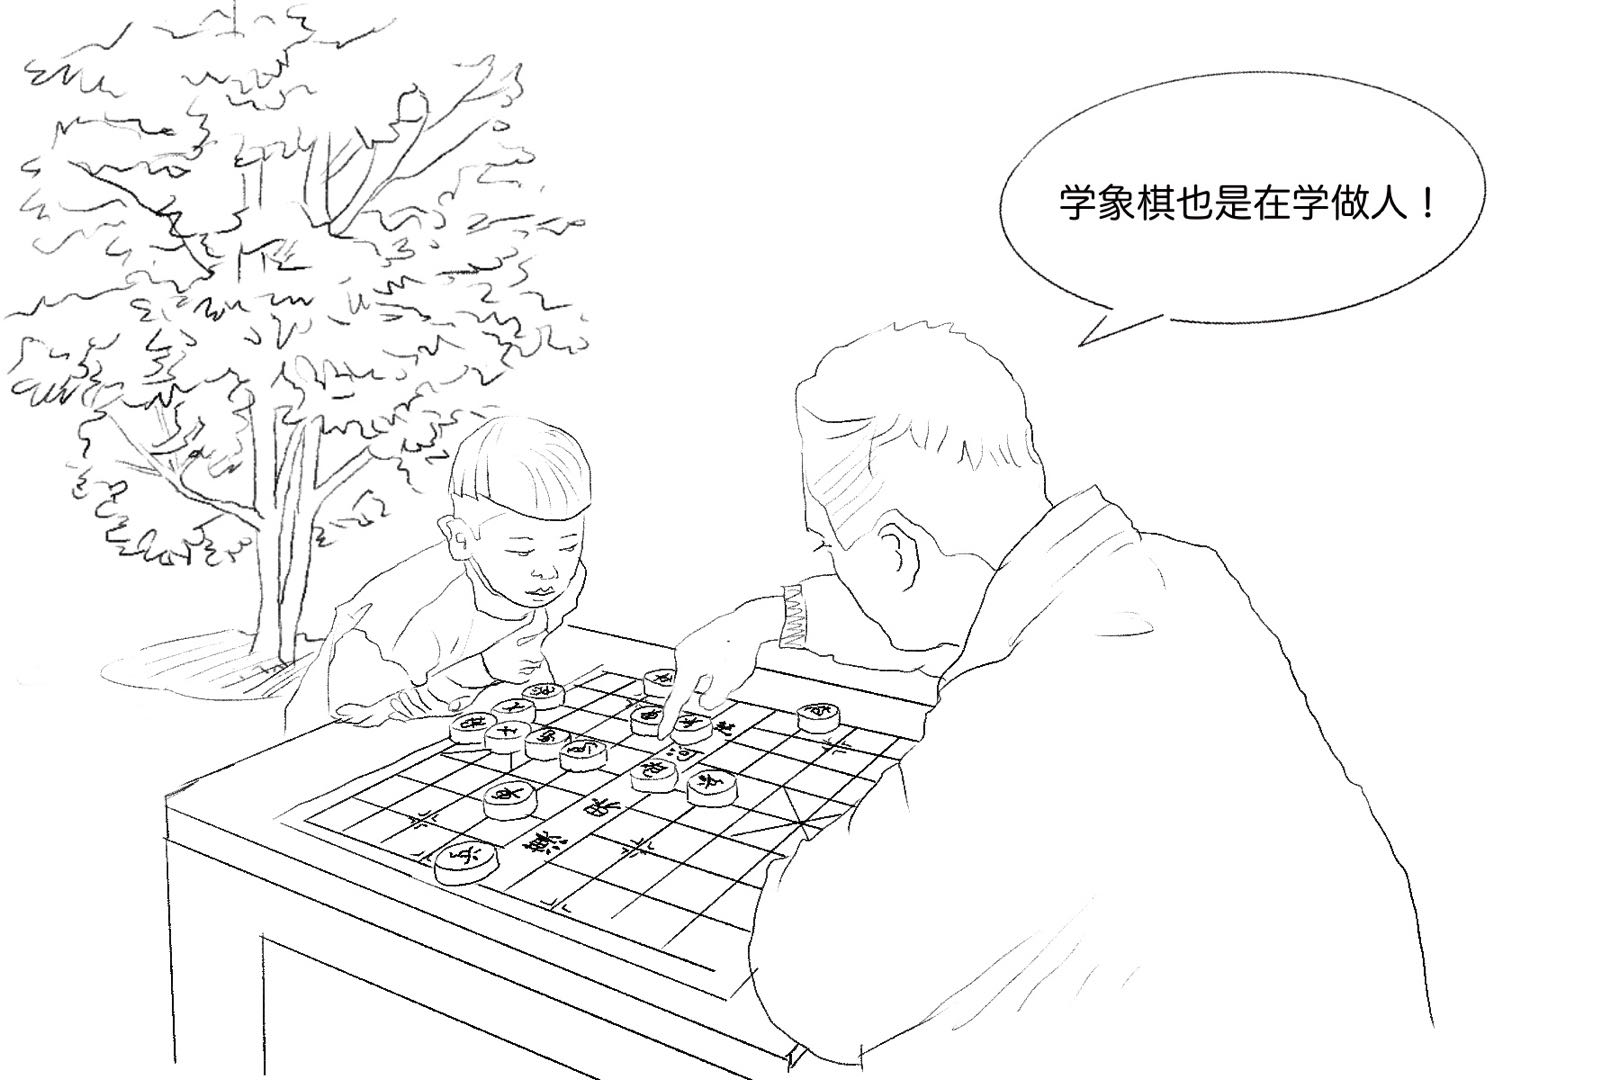 2个人在下棋的简笔画图片